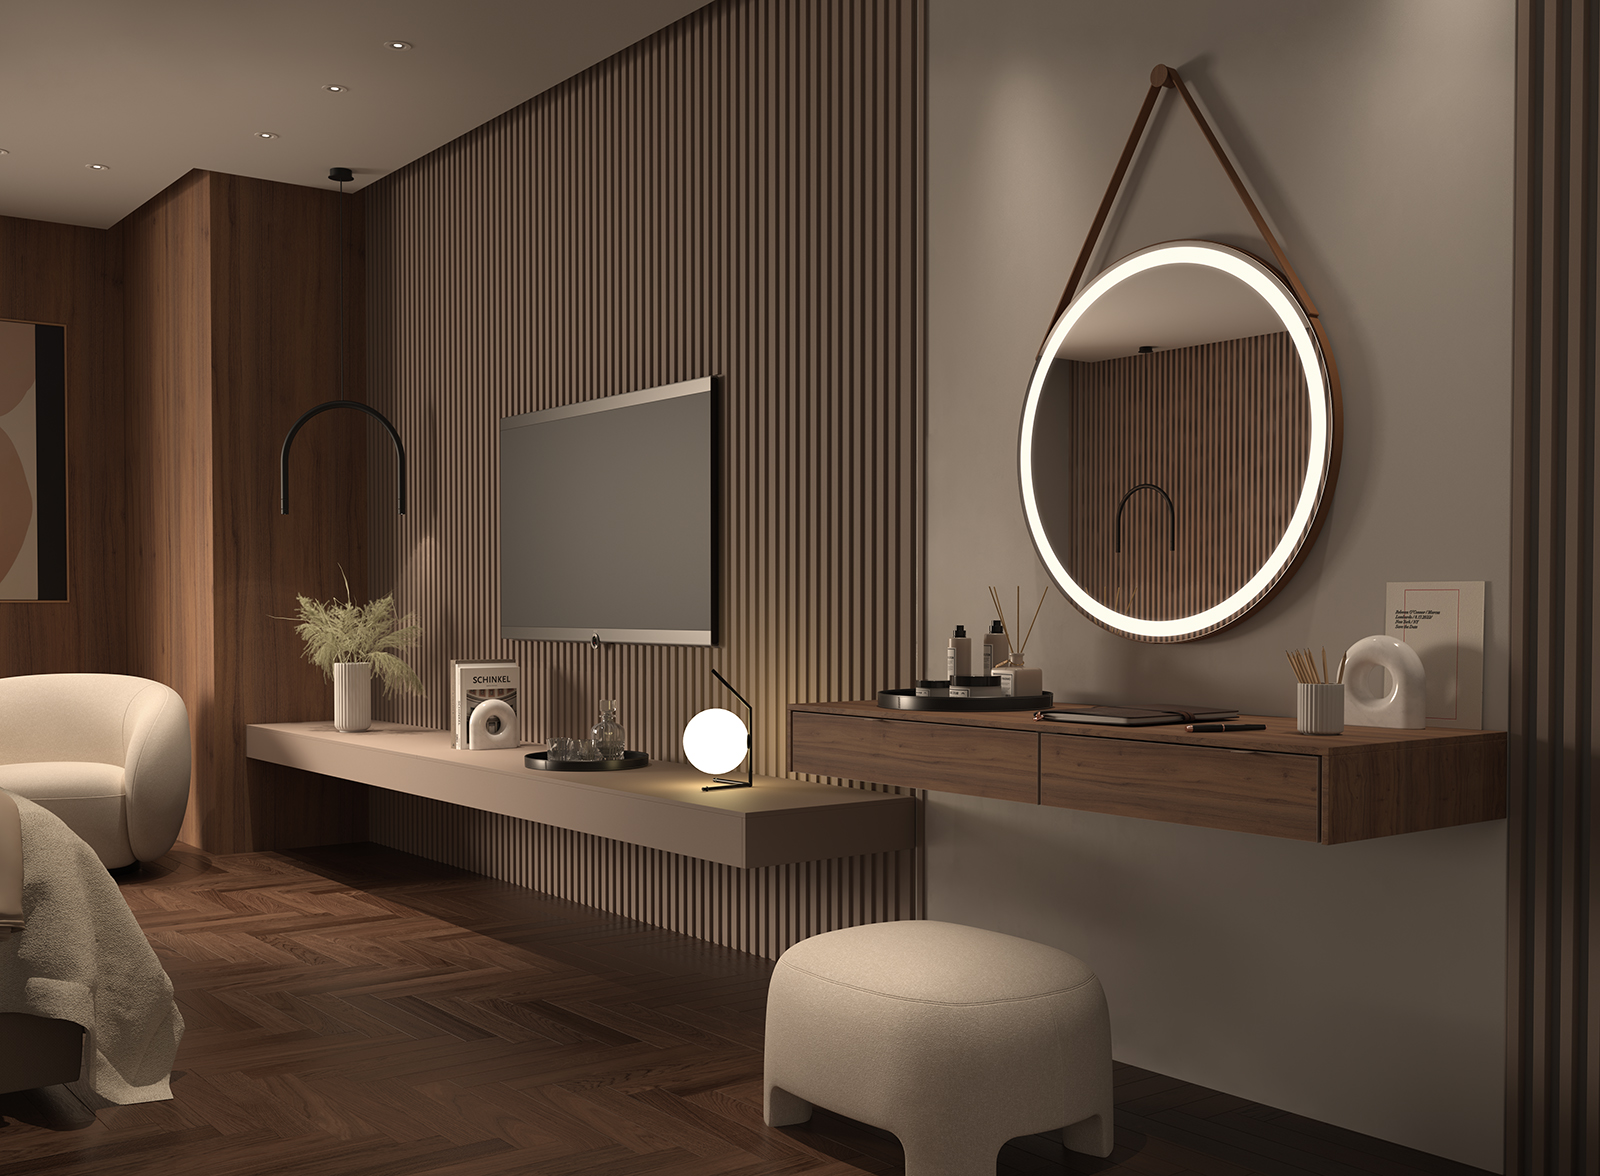 Read more about the article SPEHO se estrena en MADERALIA con una inspiradora propuesta de espejos iluminados para espacios de interiorismo